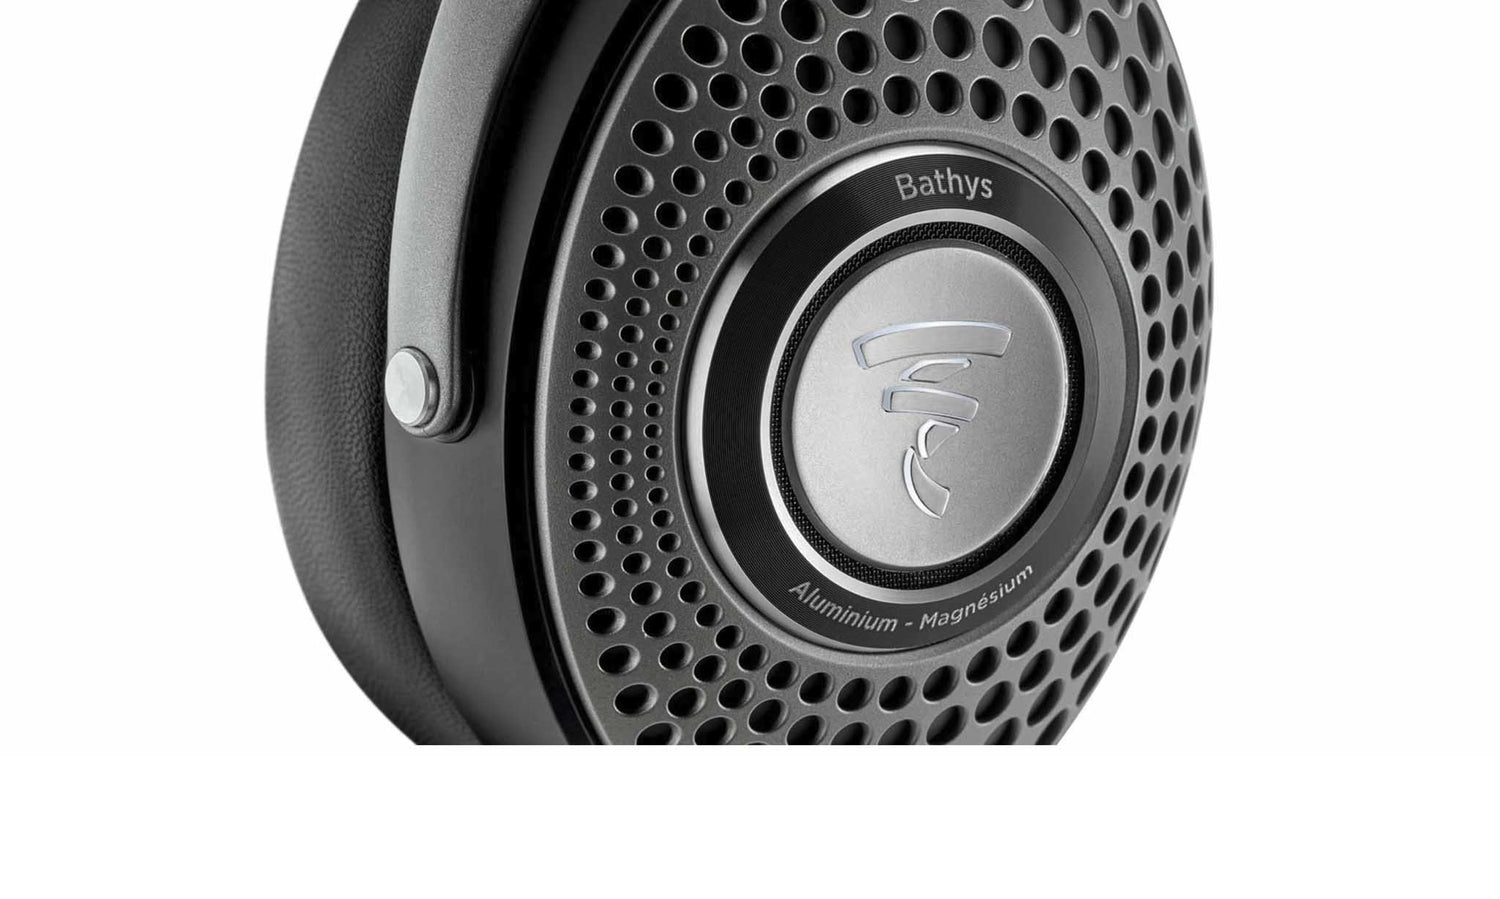 Focal BATHYS - Casque d'écoute HI-FI Bluetooth à réduction de bruit! —